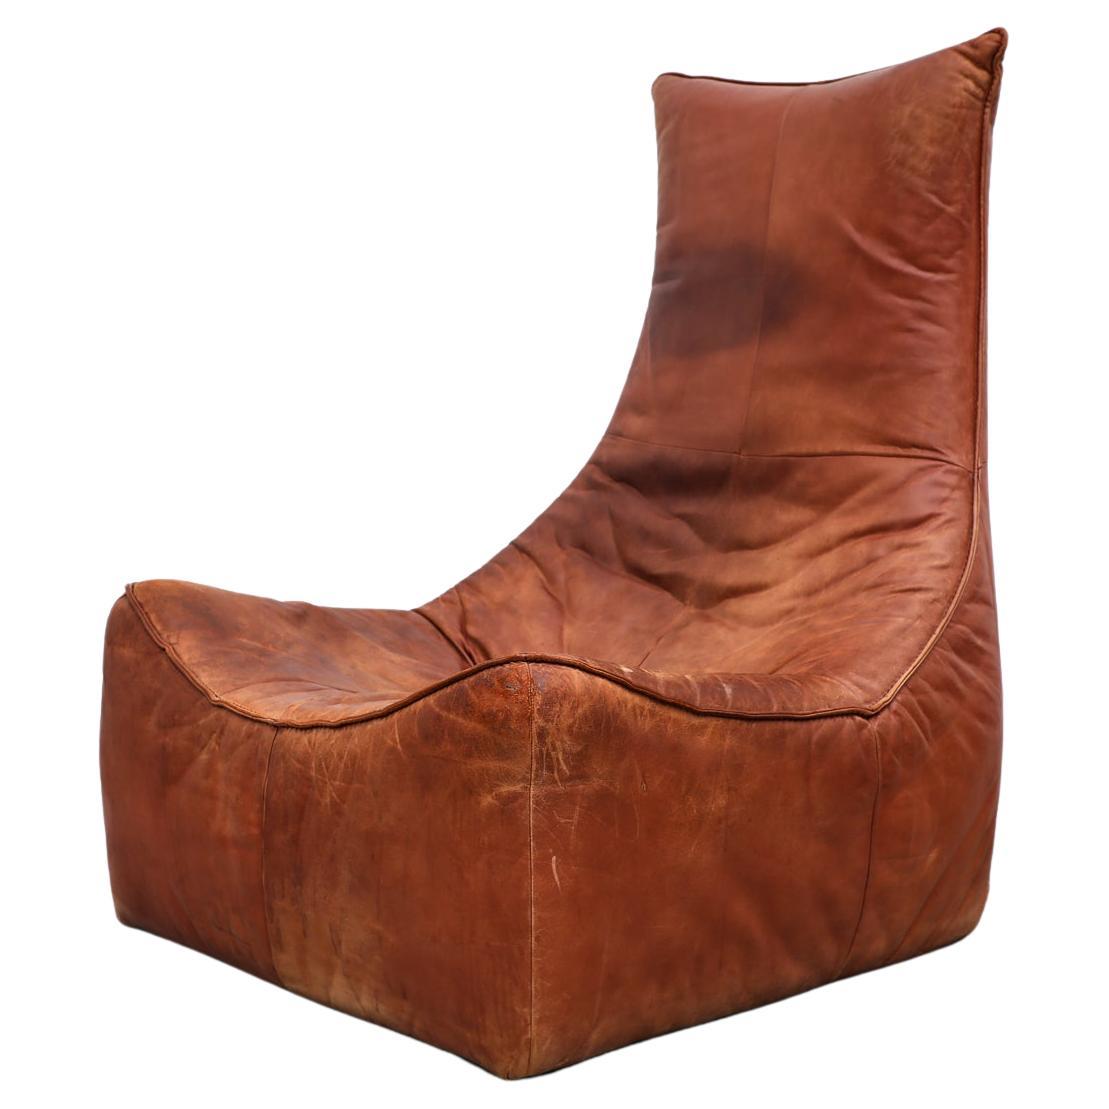 Gerard van den Berg "The Rock" Lounge Chair